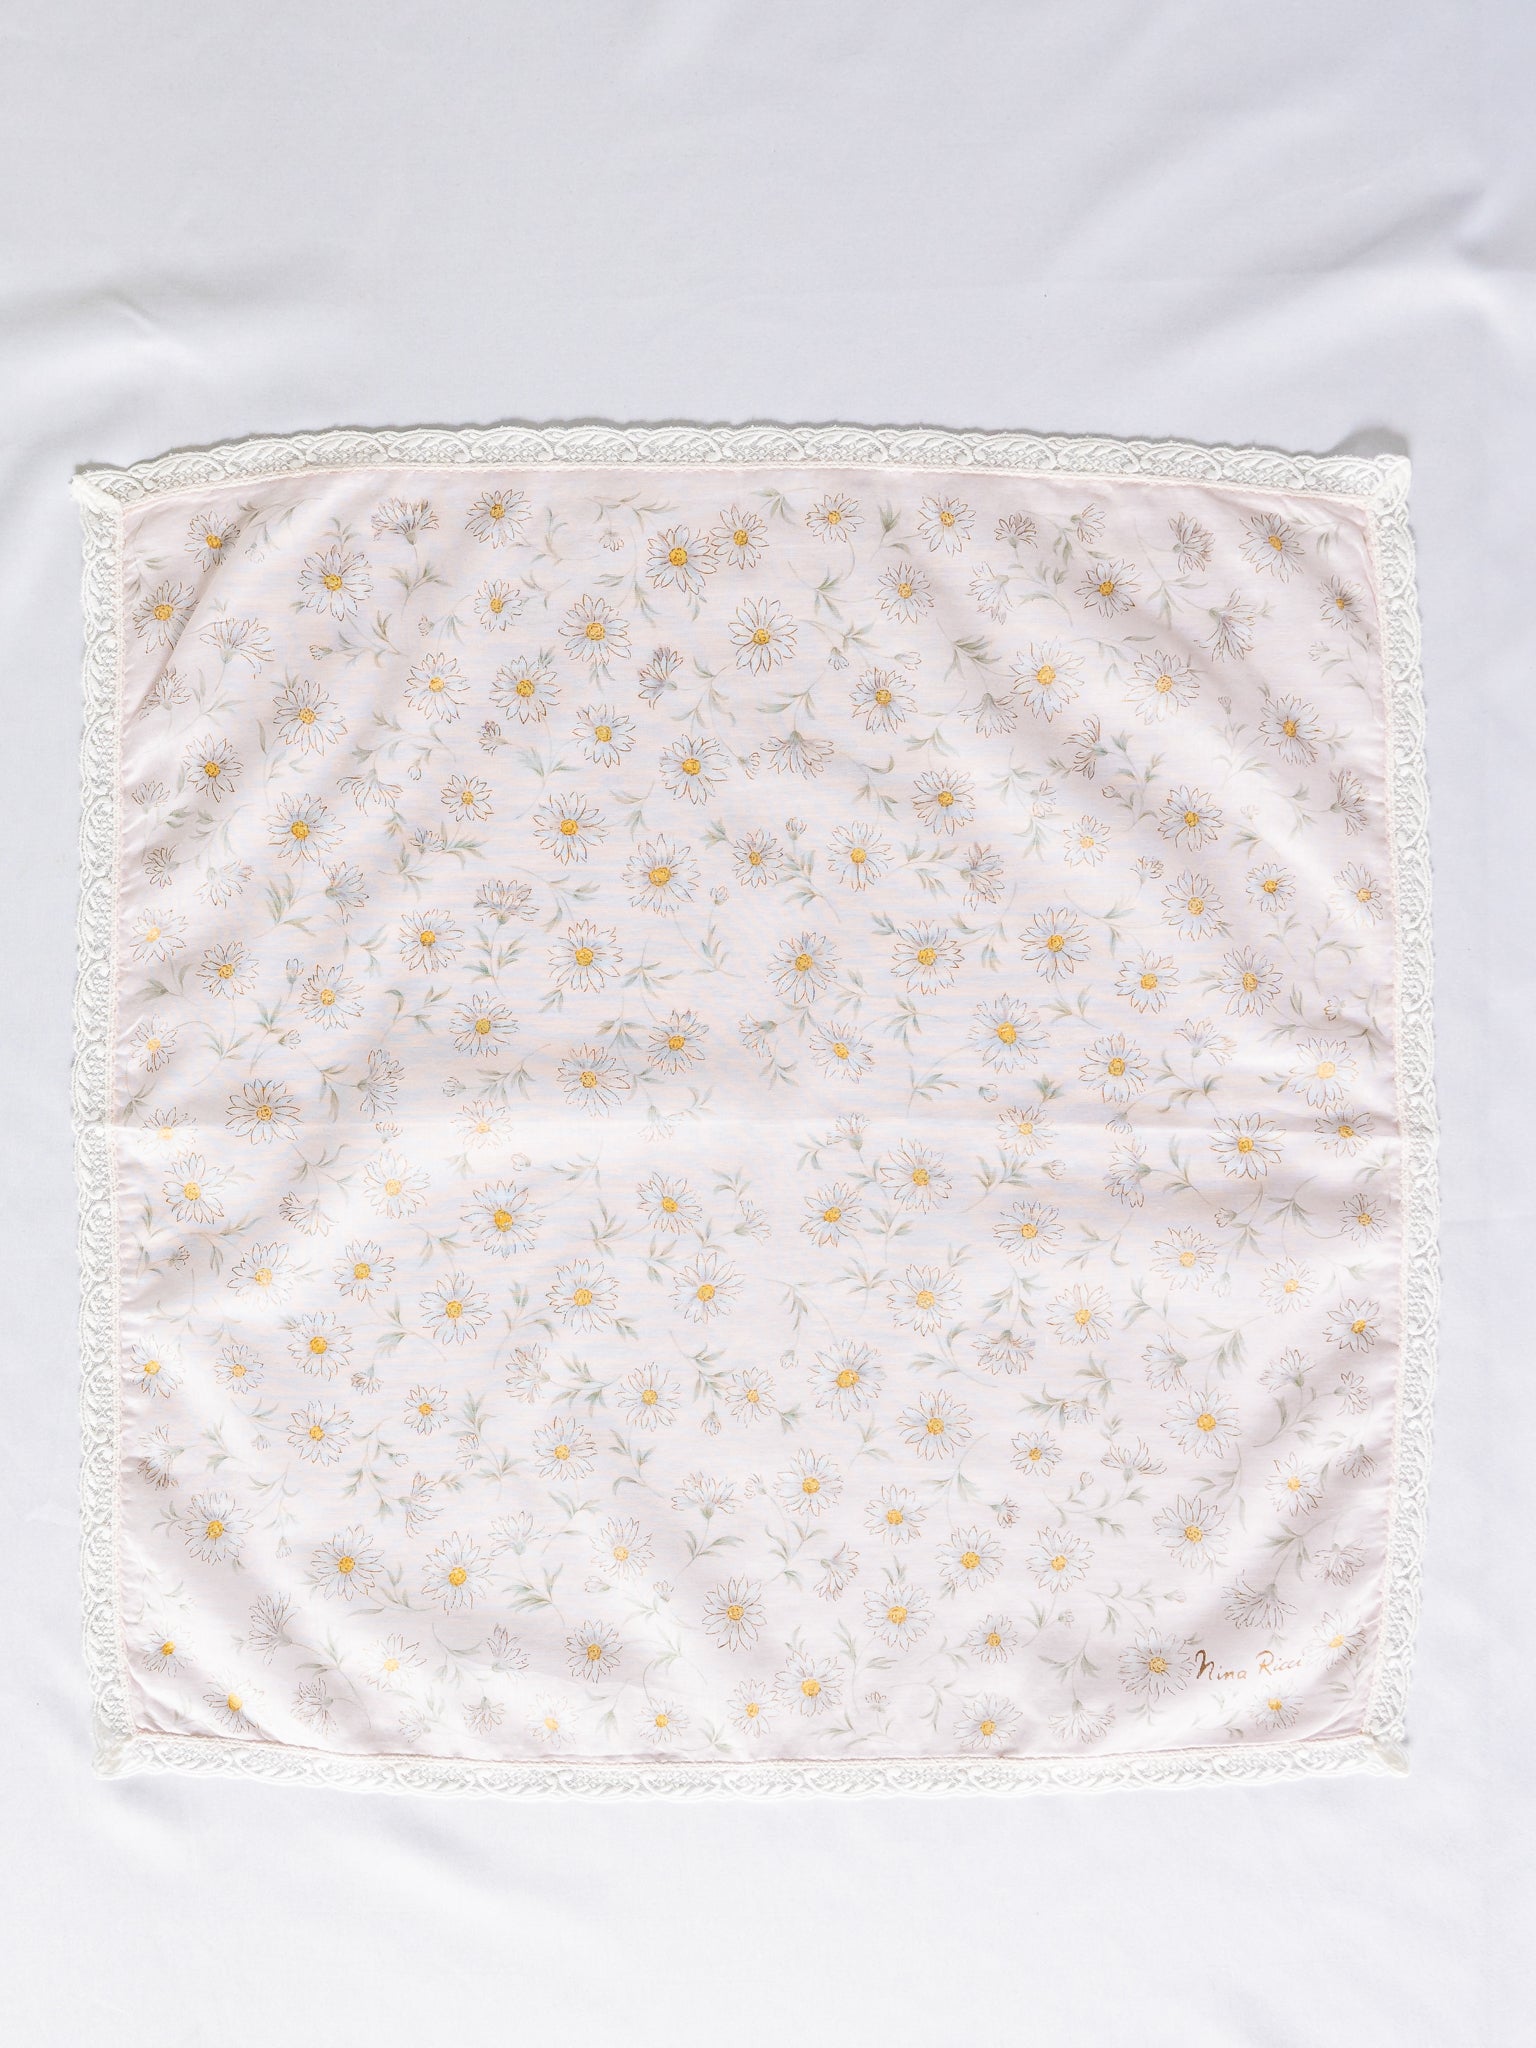 Vintage Nina Ricci Daisy Print Lace Border Cotton Handkerchief